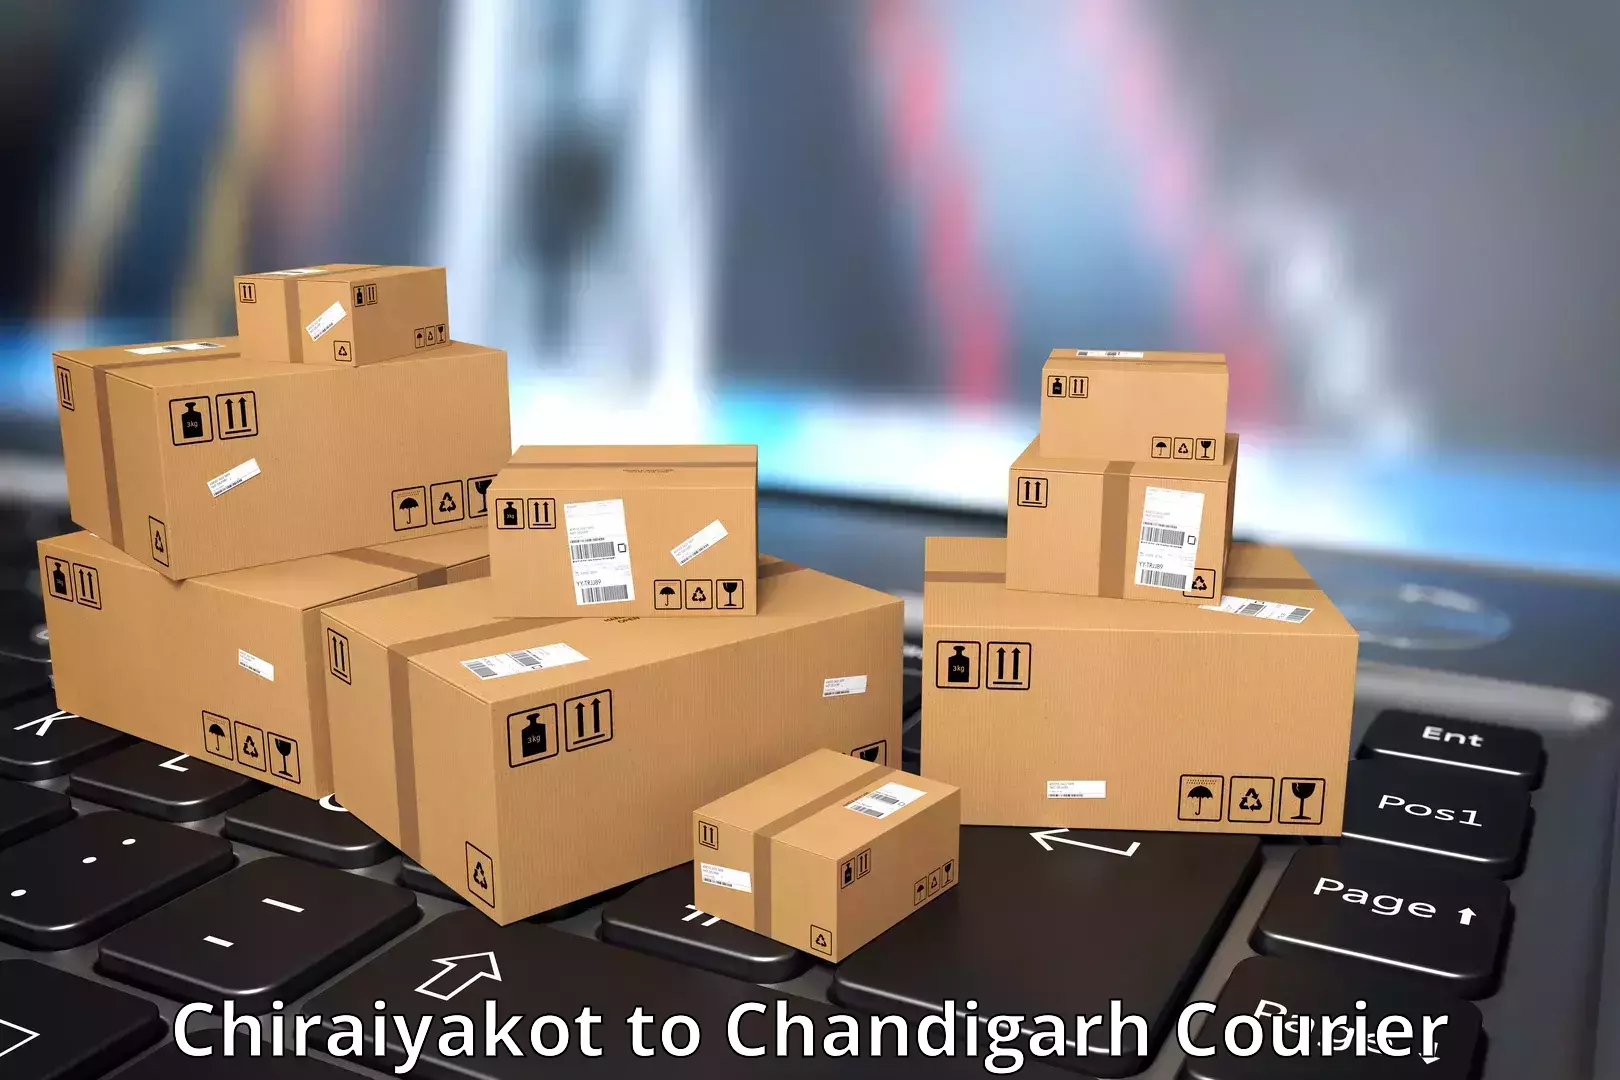 Global shipping networks Chiraiyakot to Kharar